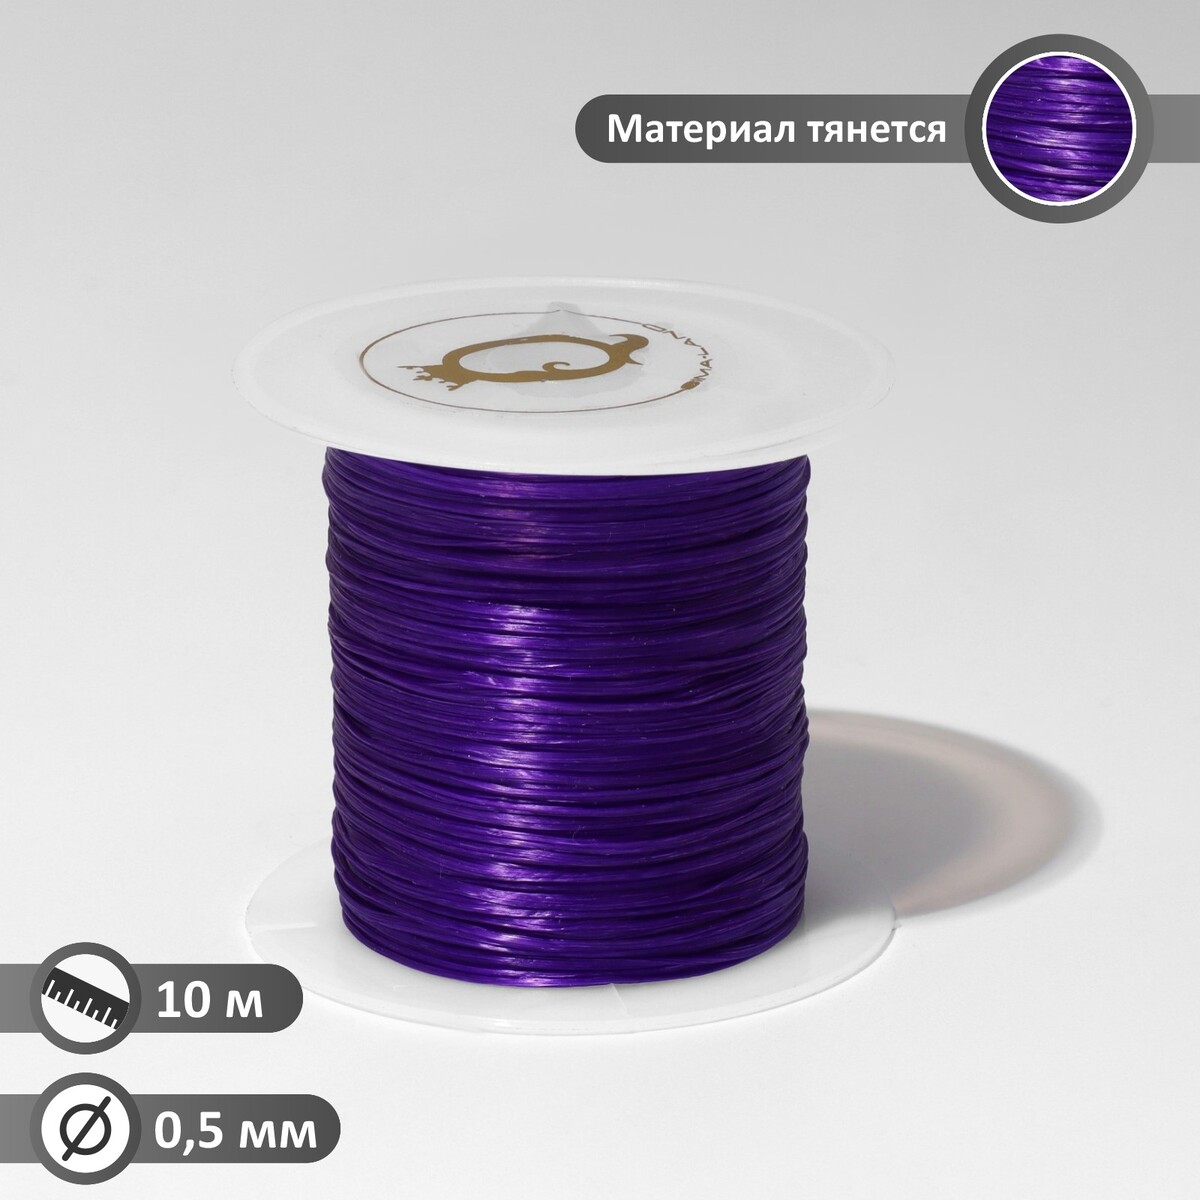 Нить силиконовая (резинка) d=0,5 мм, l=10 м (прочность 2250 денье), цвет фиолетовый нить силиконовая резинка d 0 5мм l 400м прочность 2500 денье